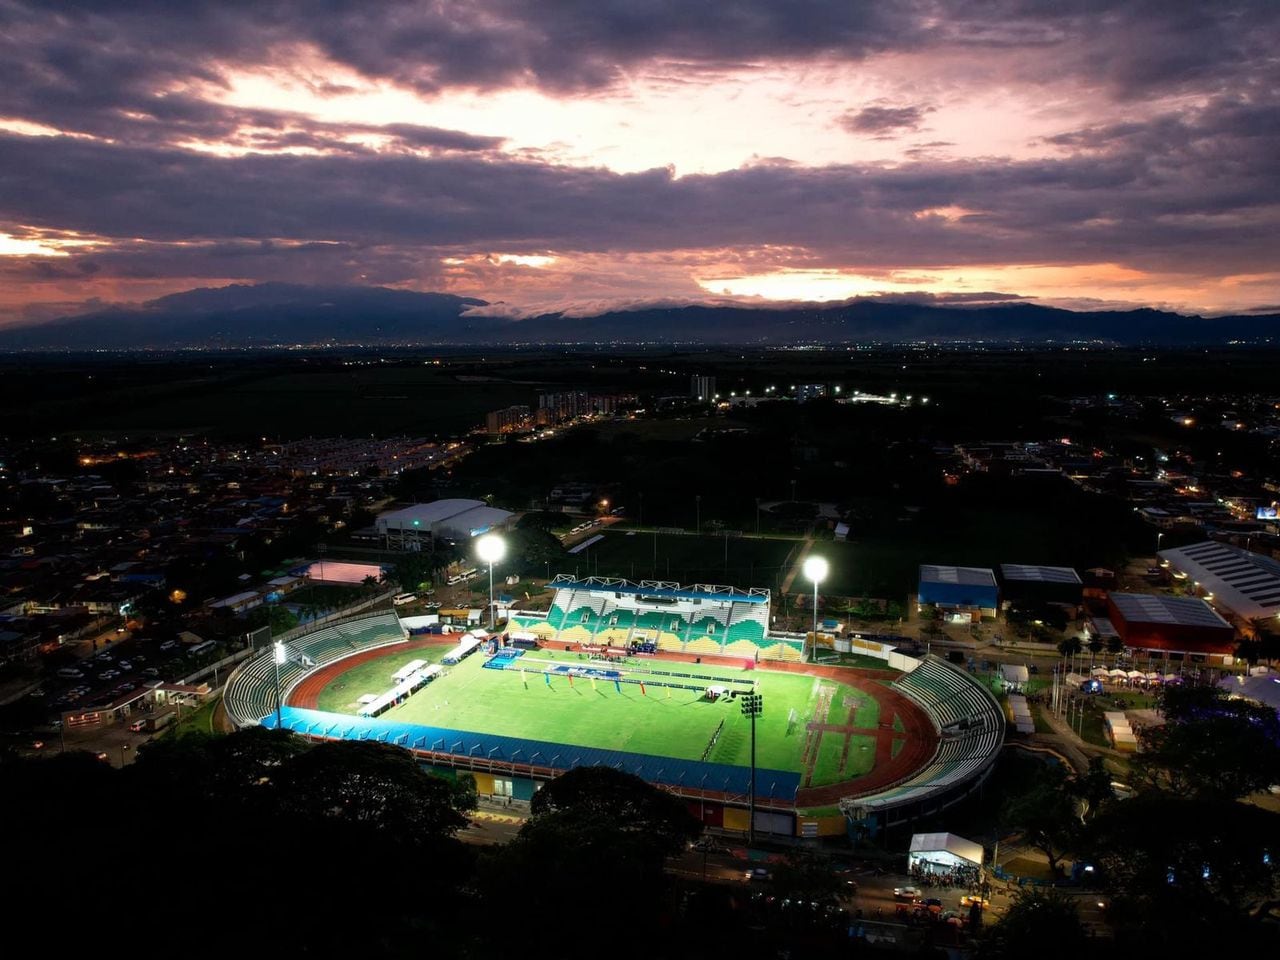 Imagen del estadio Francisco Rivera Escobar, sede de Internacional FC de Palmira.